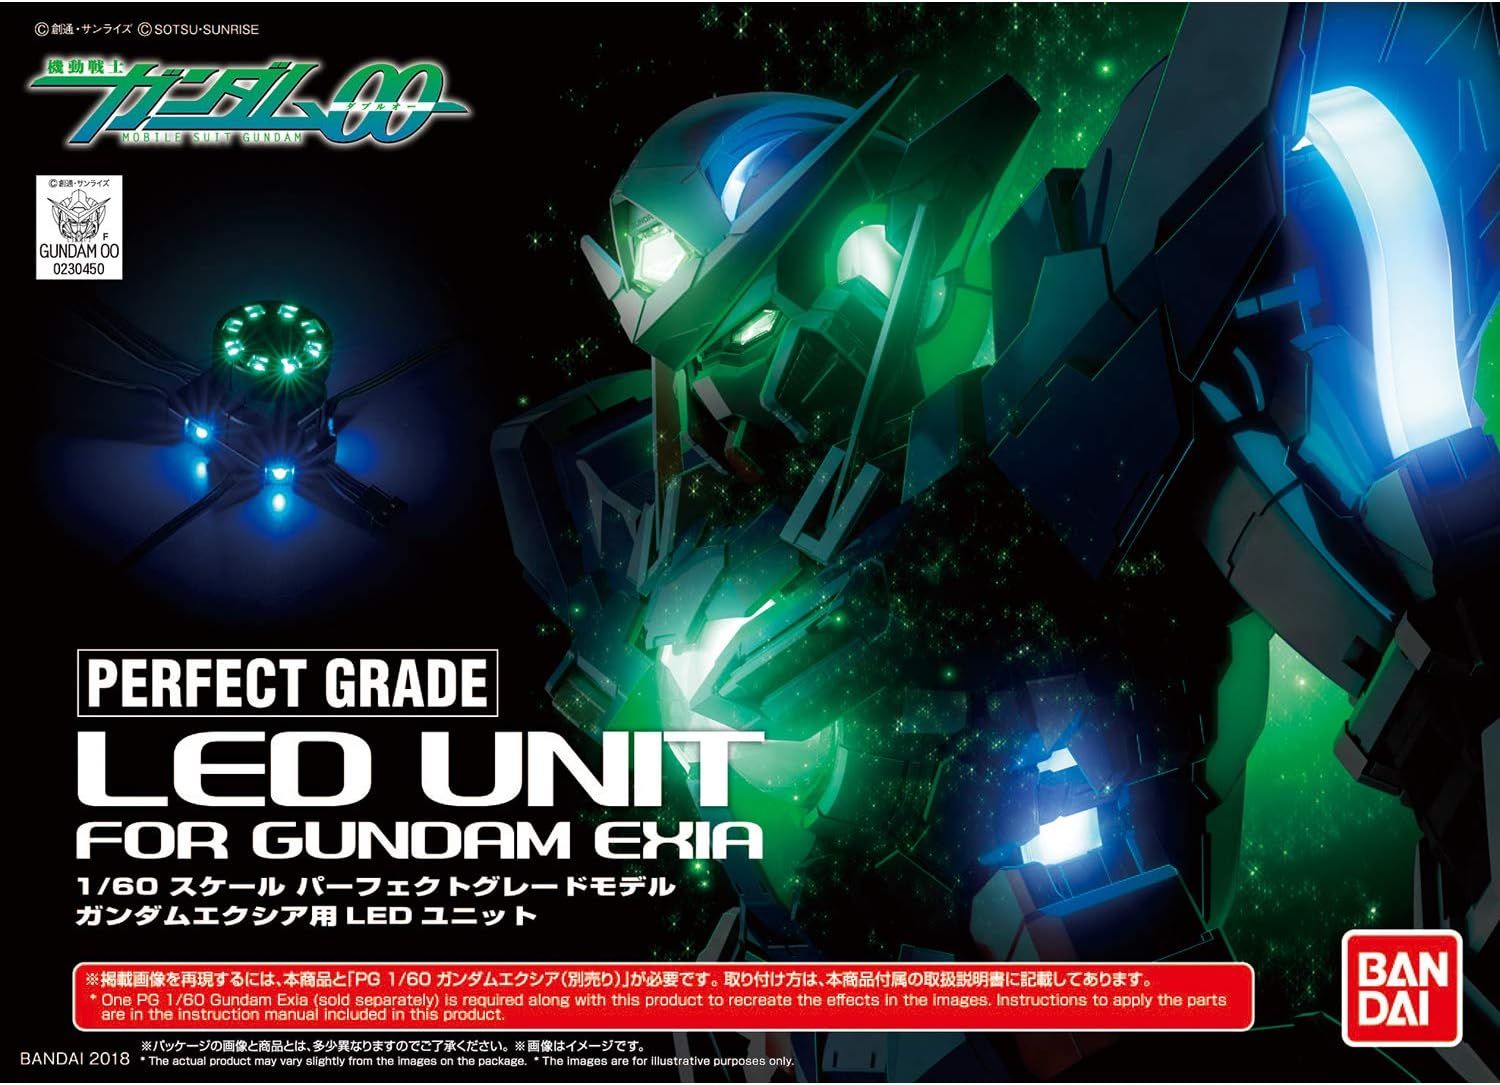 Bandai 1/60 Scale PG Gundam 00 LED Unit for Gundam Exia